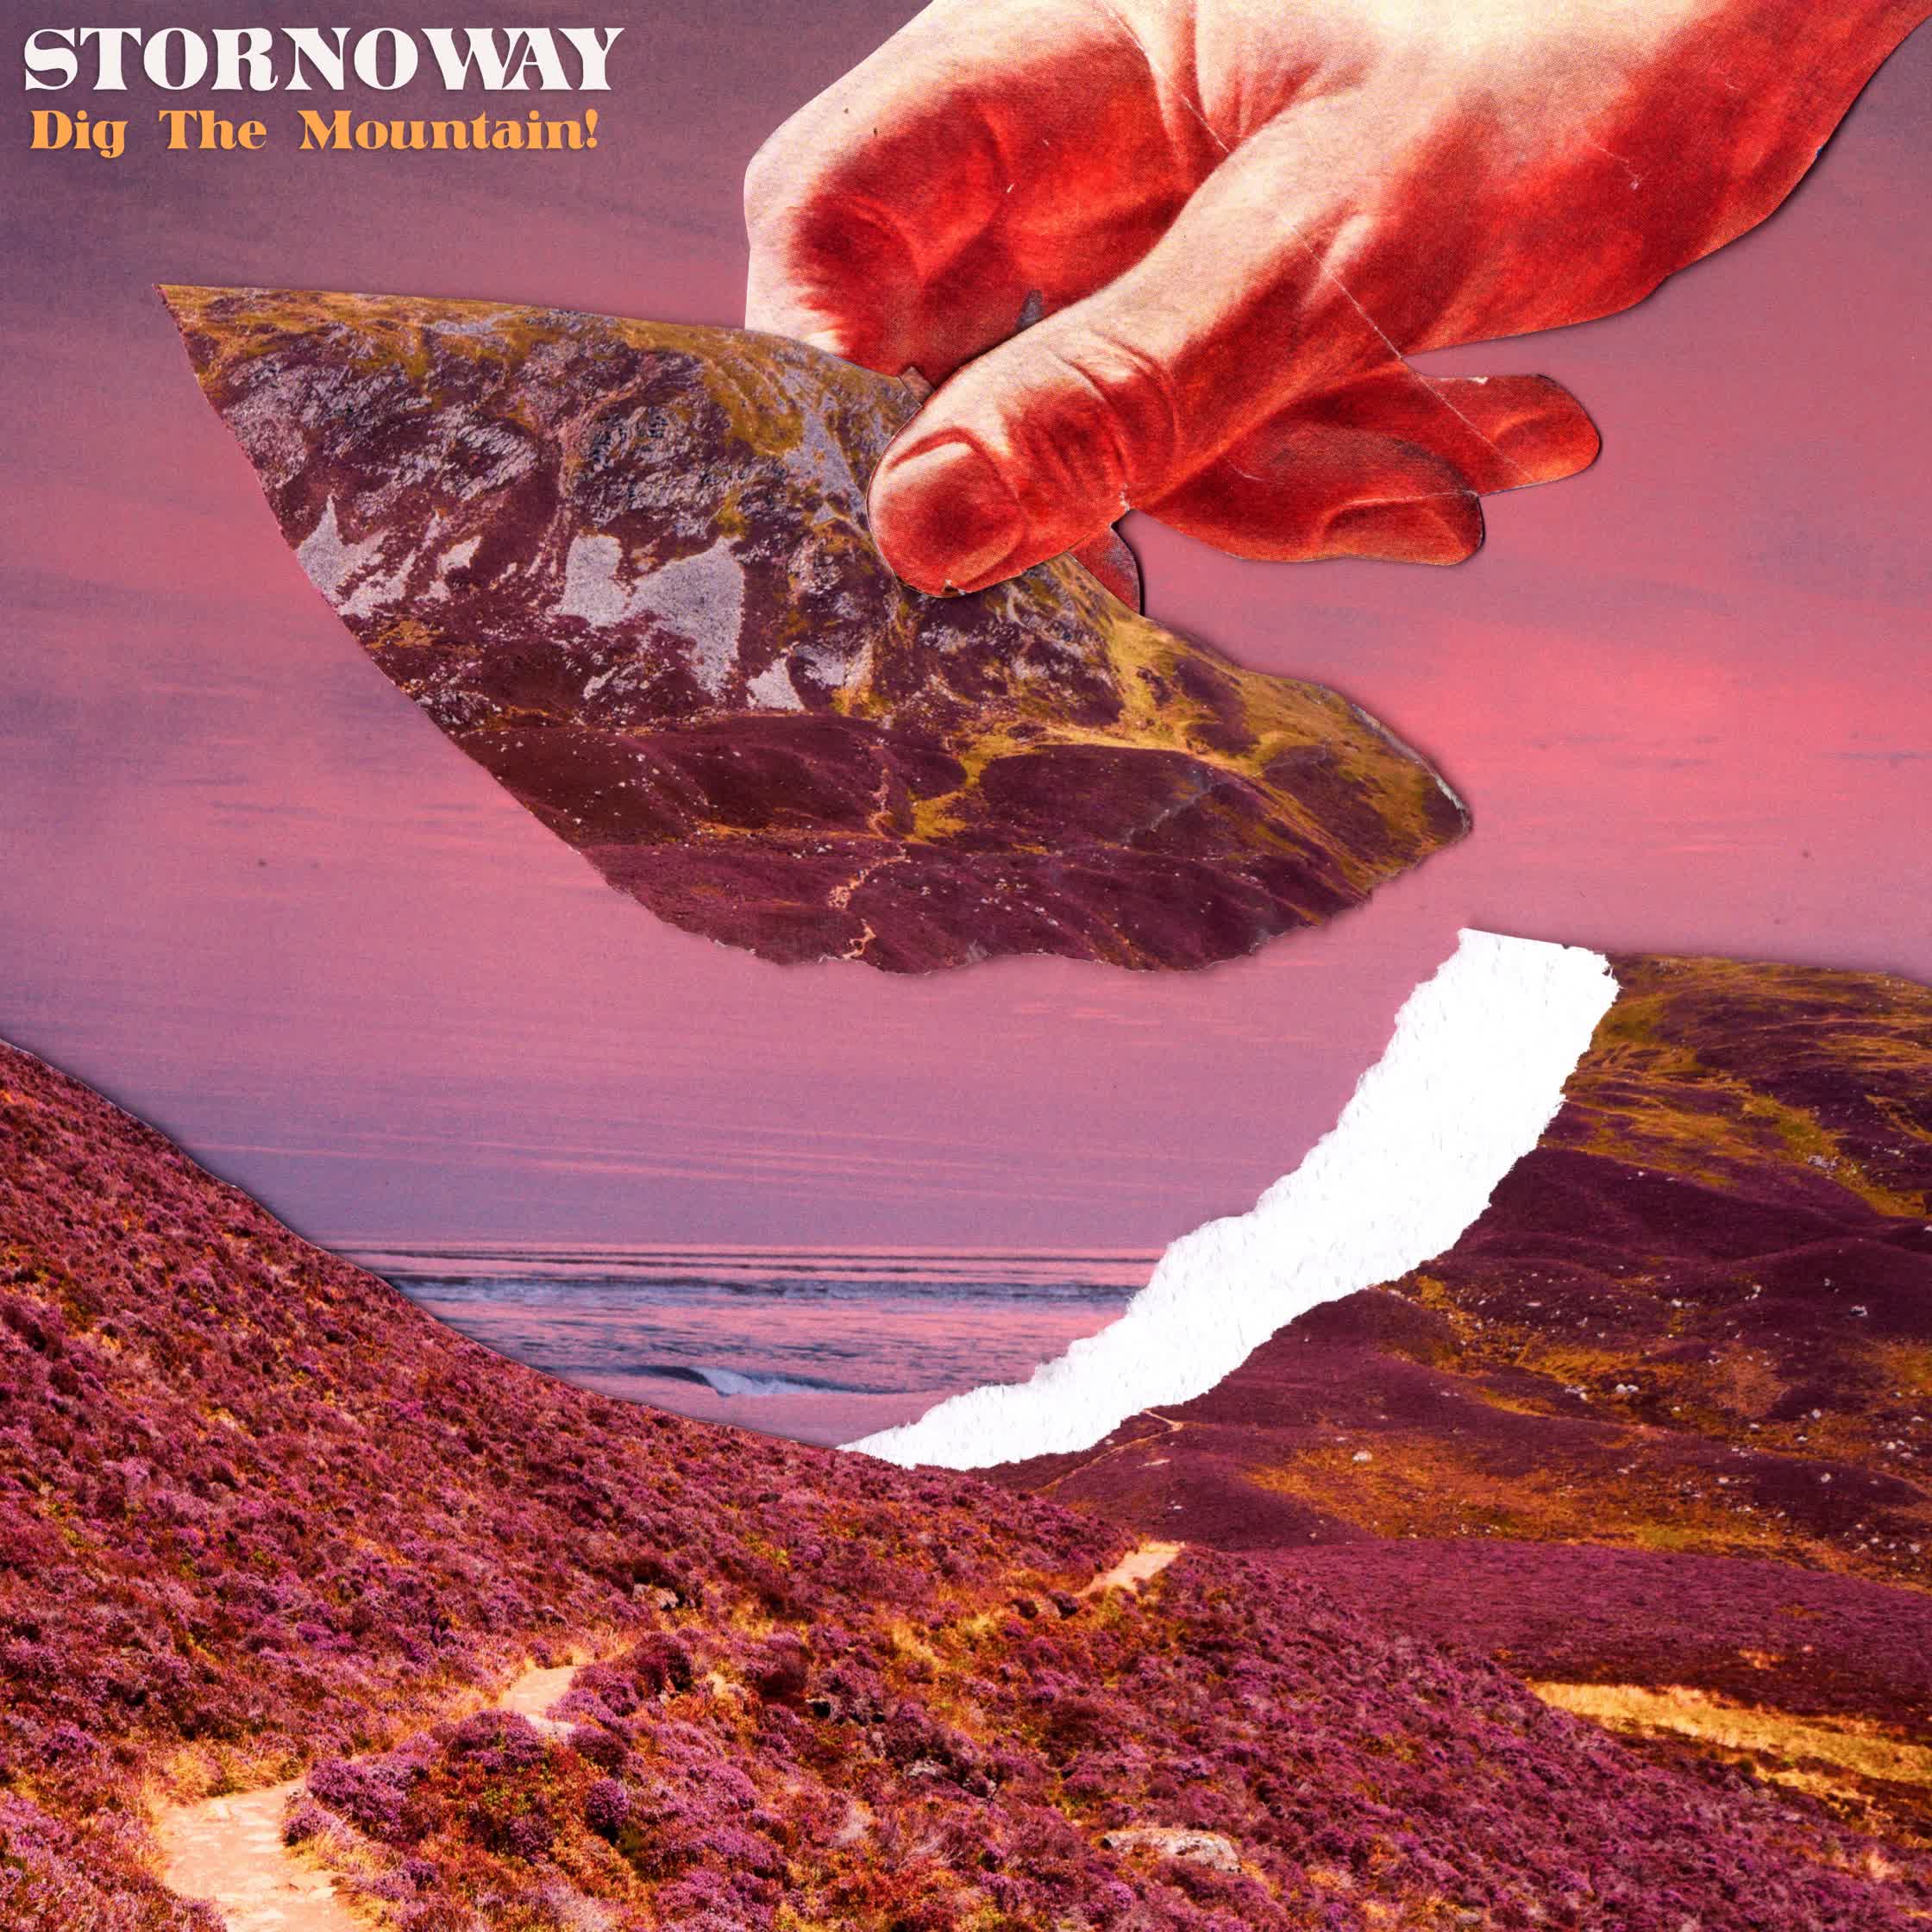 Album Artwork for 'Stornoway%22 .jpg